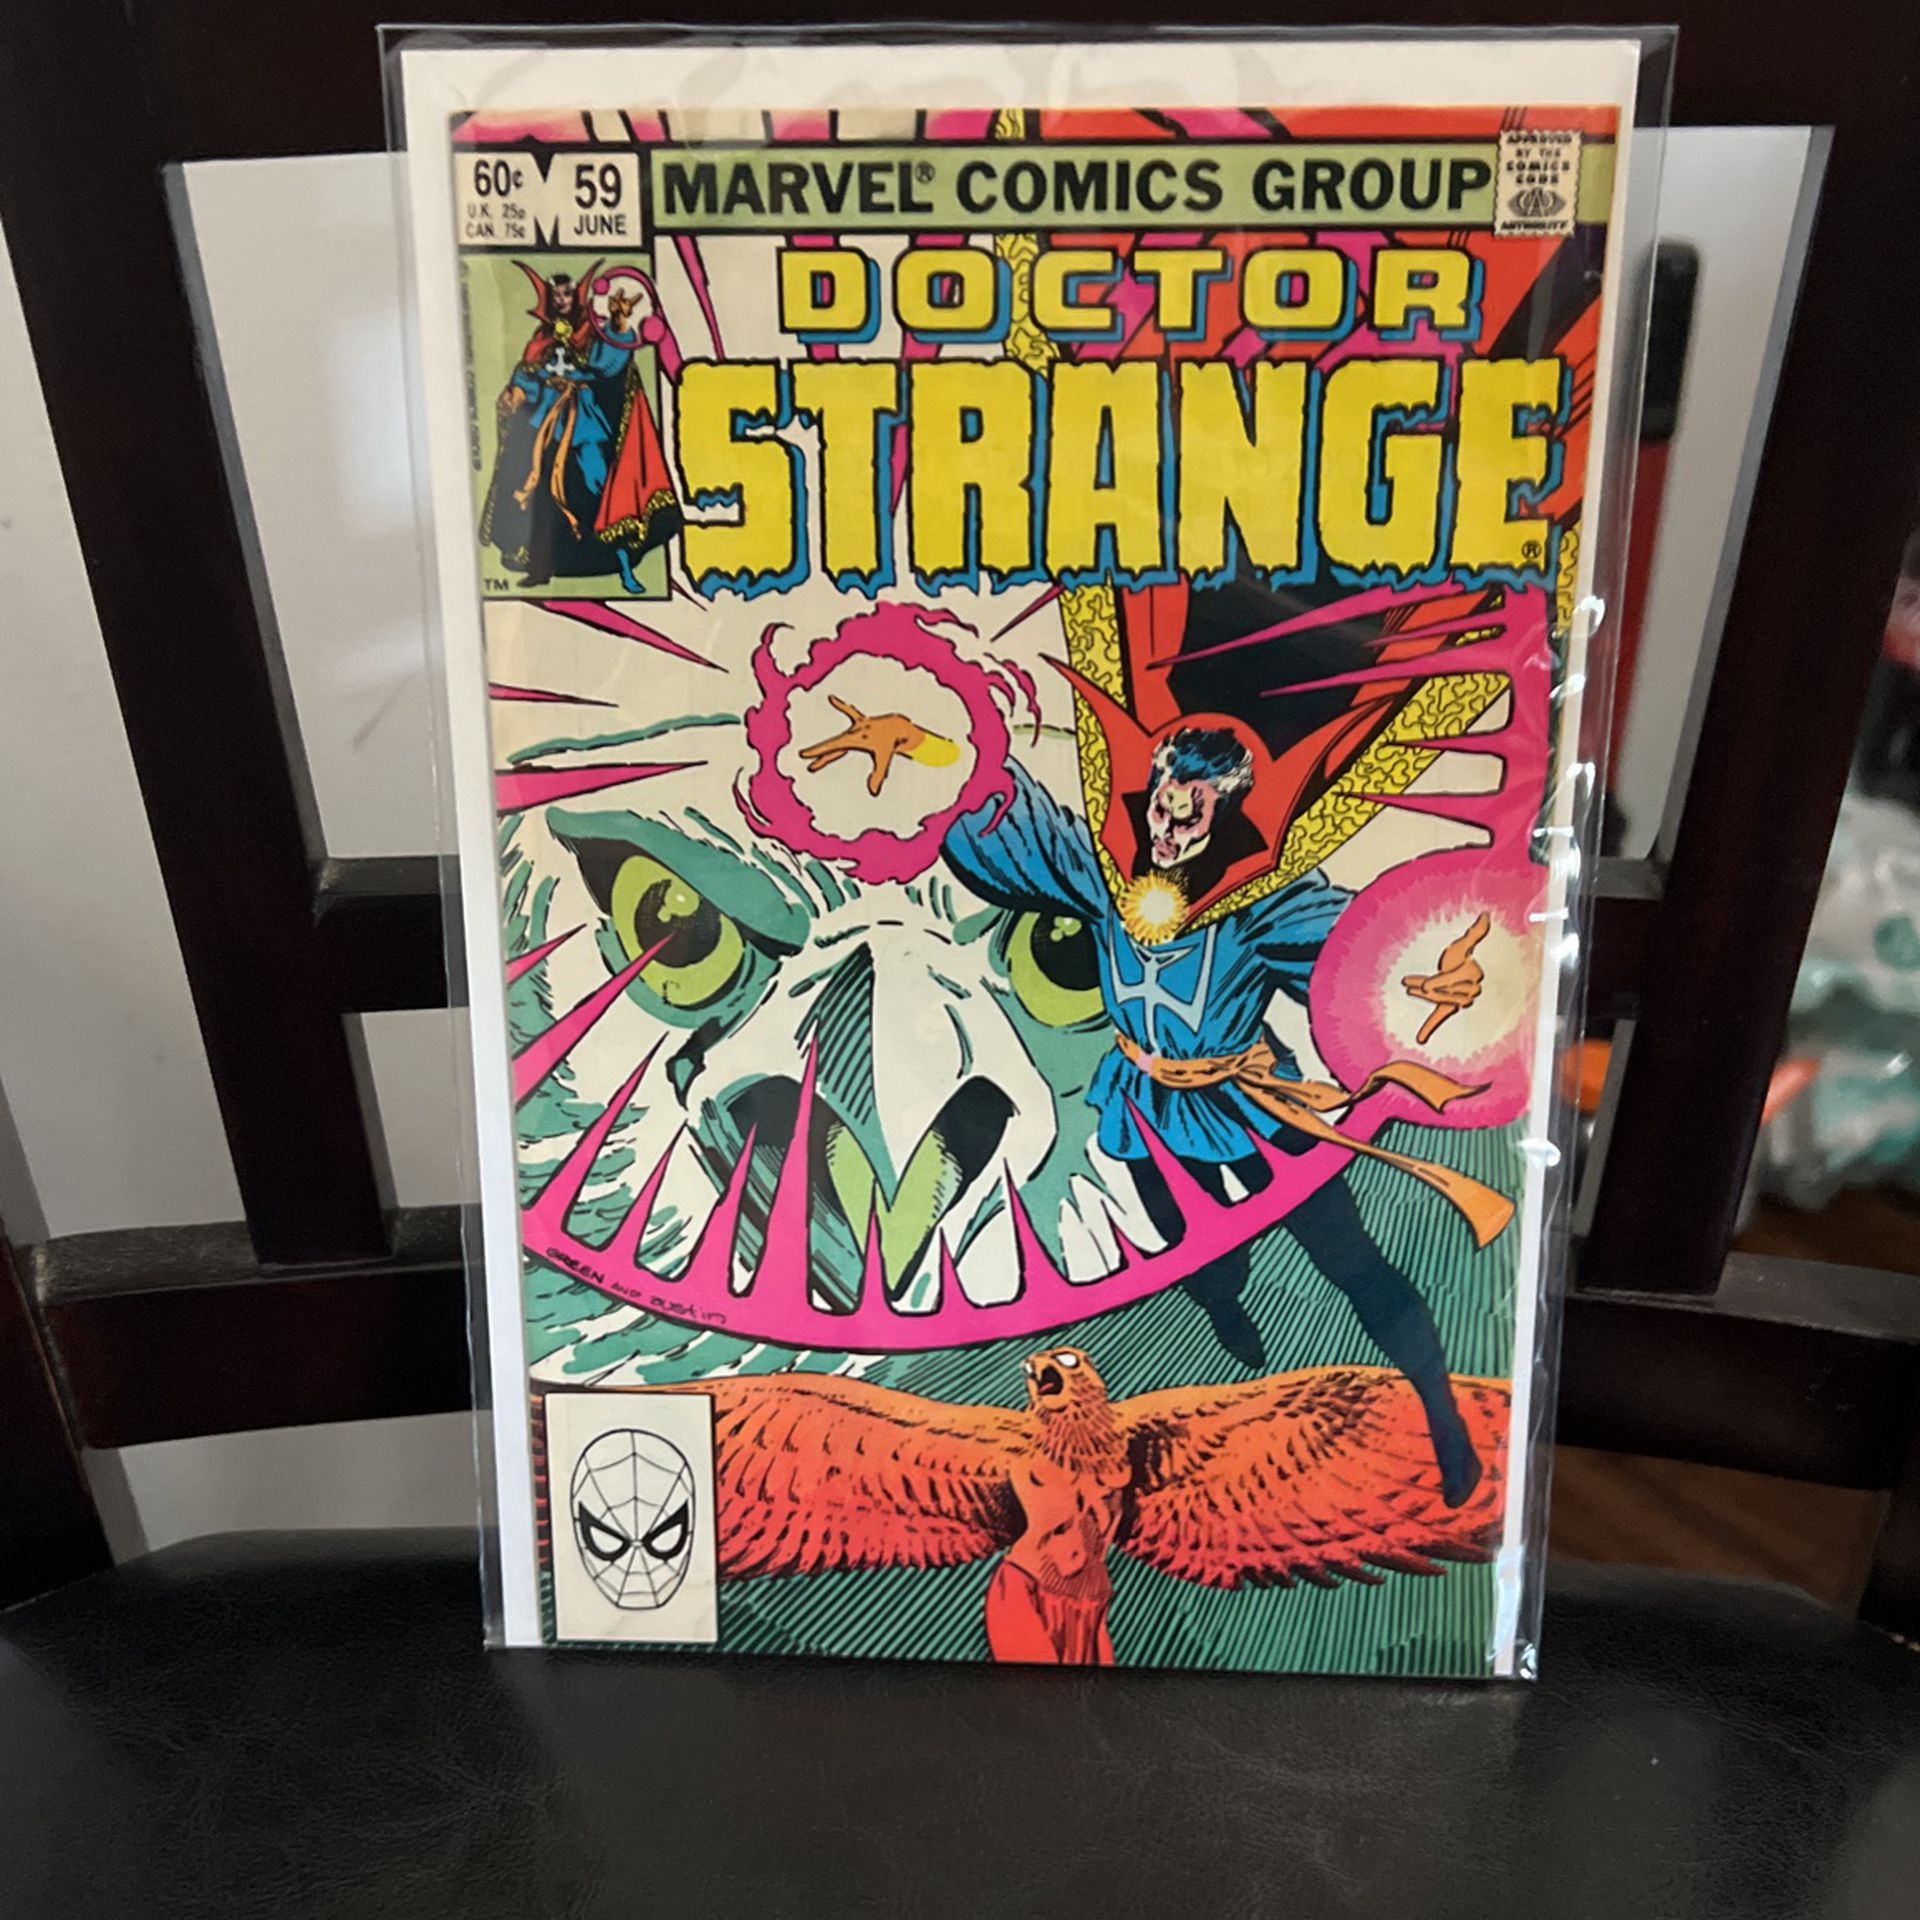 Dr Strange Issue 59